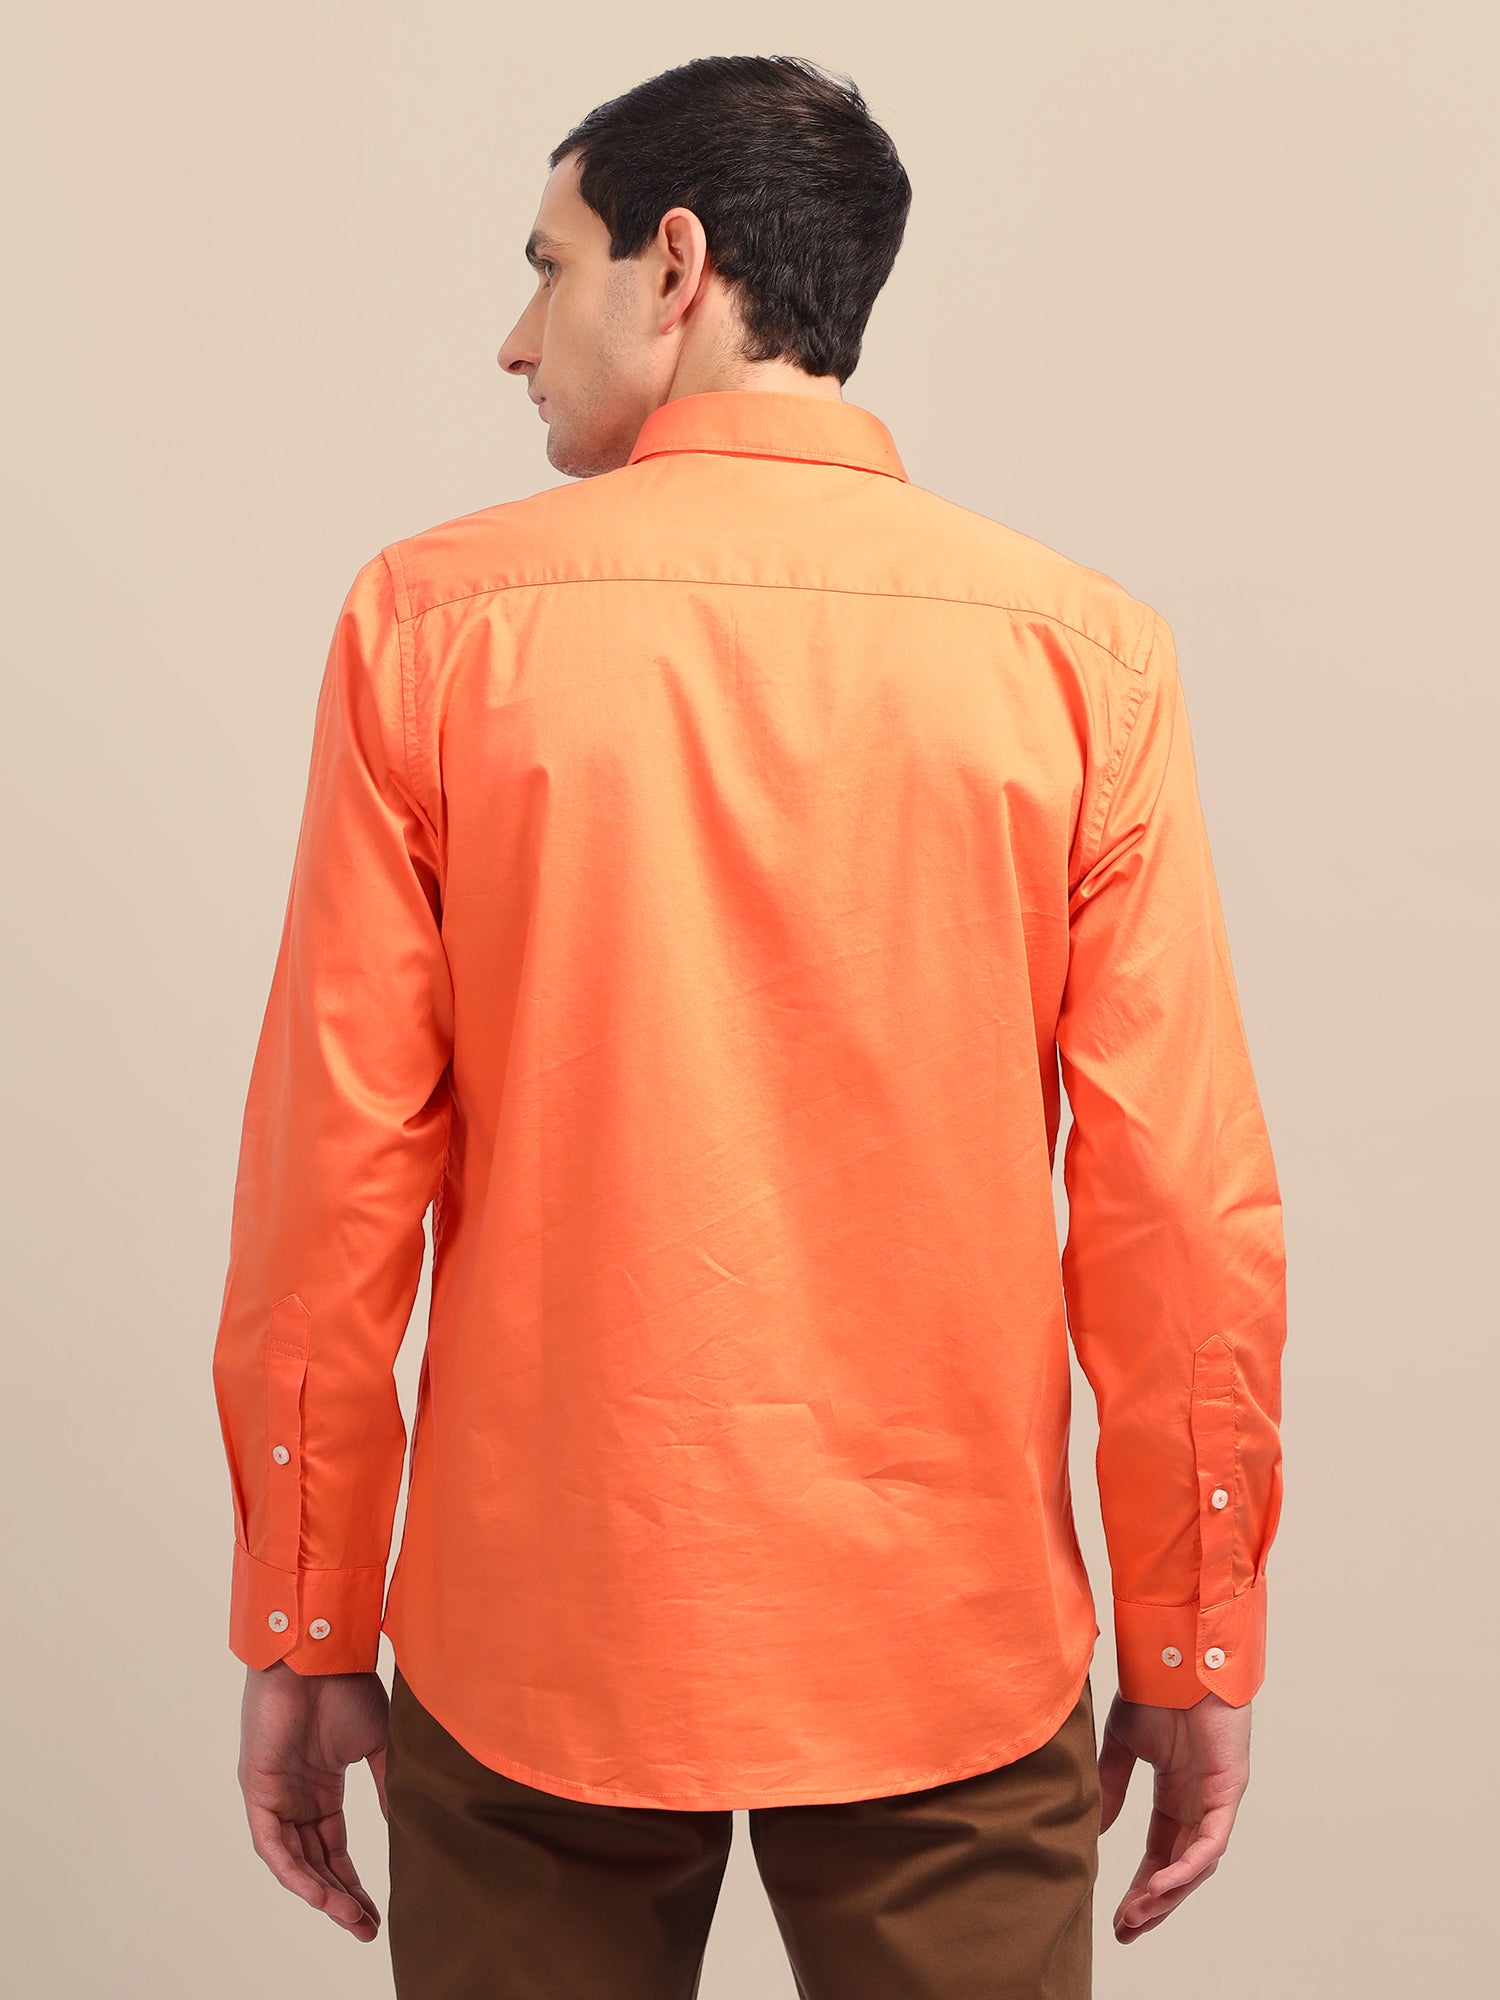 Orange Athleisure Shirts With Premium Cotton Lycra